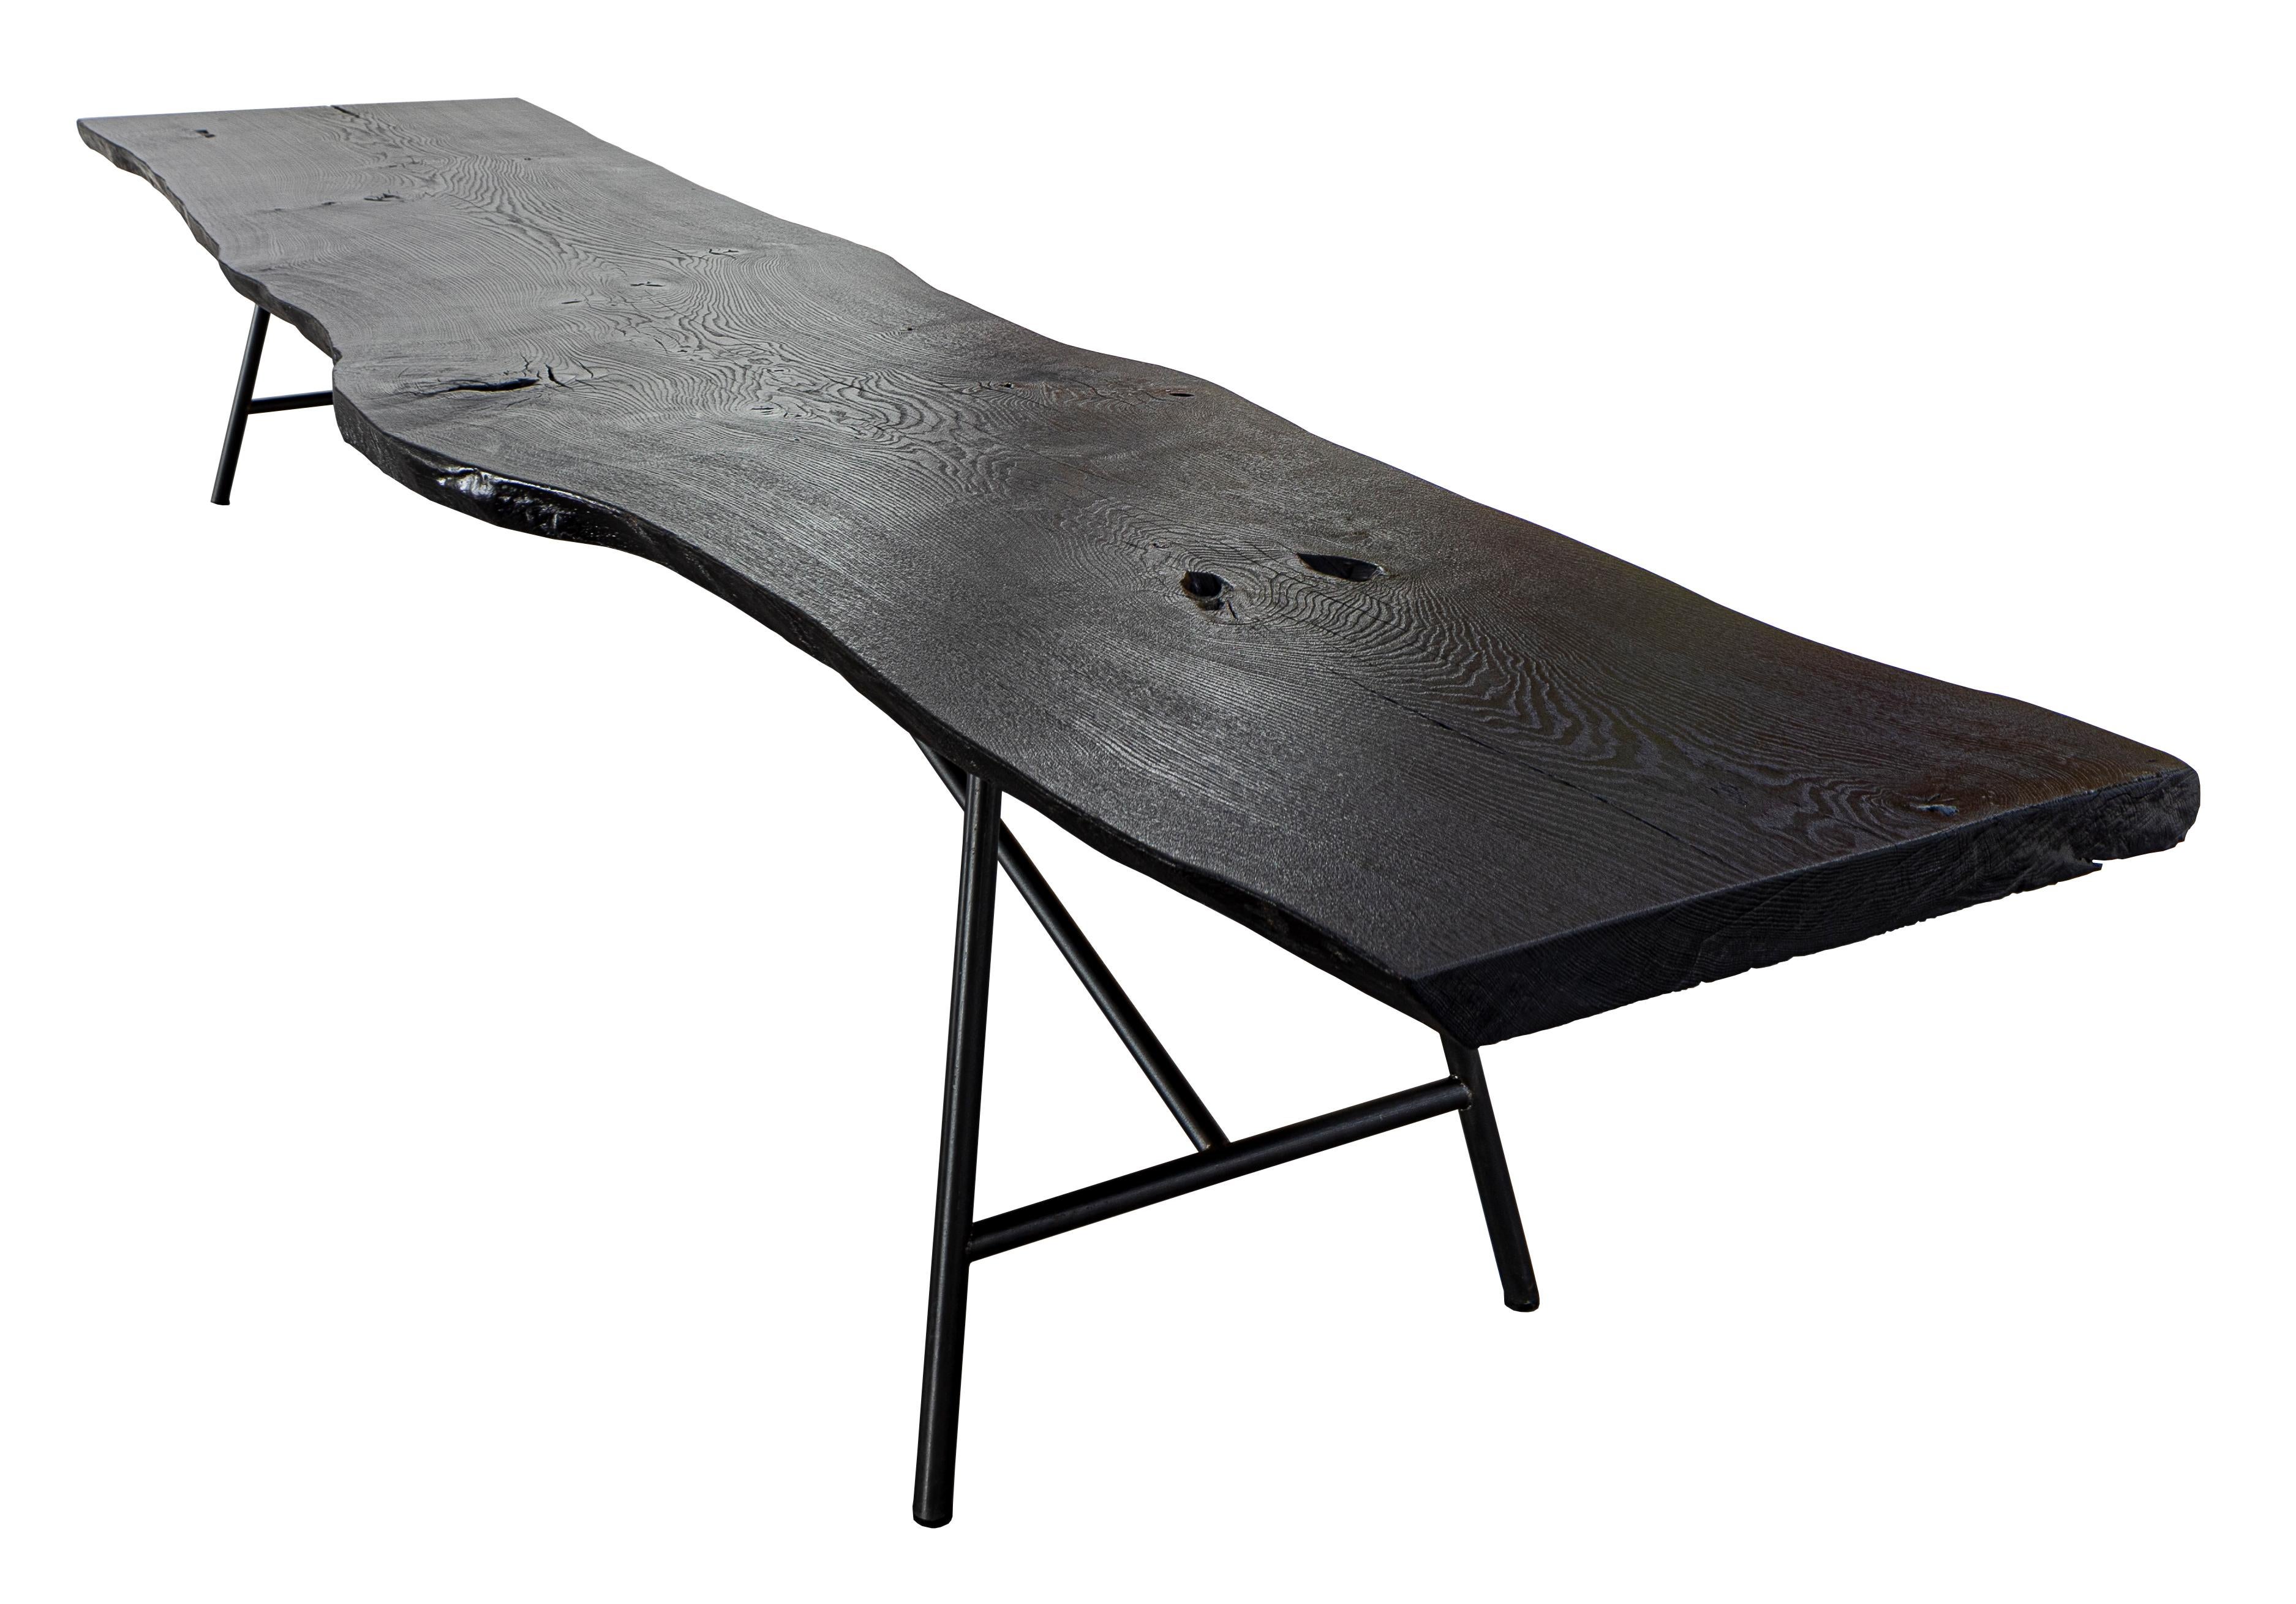 Cette table en Unikat avec un revêtement de sol léché peut être remplacée en un seul bloc par une table en bois de chêne. La combinaison d'une terre noire, façonnée par le feu selon une tradition vieille de plus d'un siècle, et d'une pierre taillée